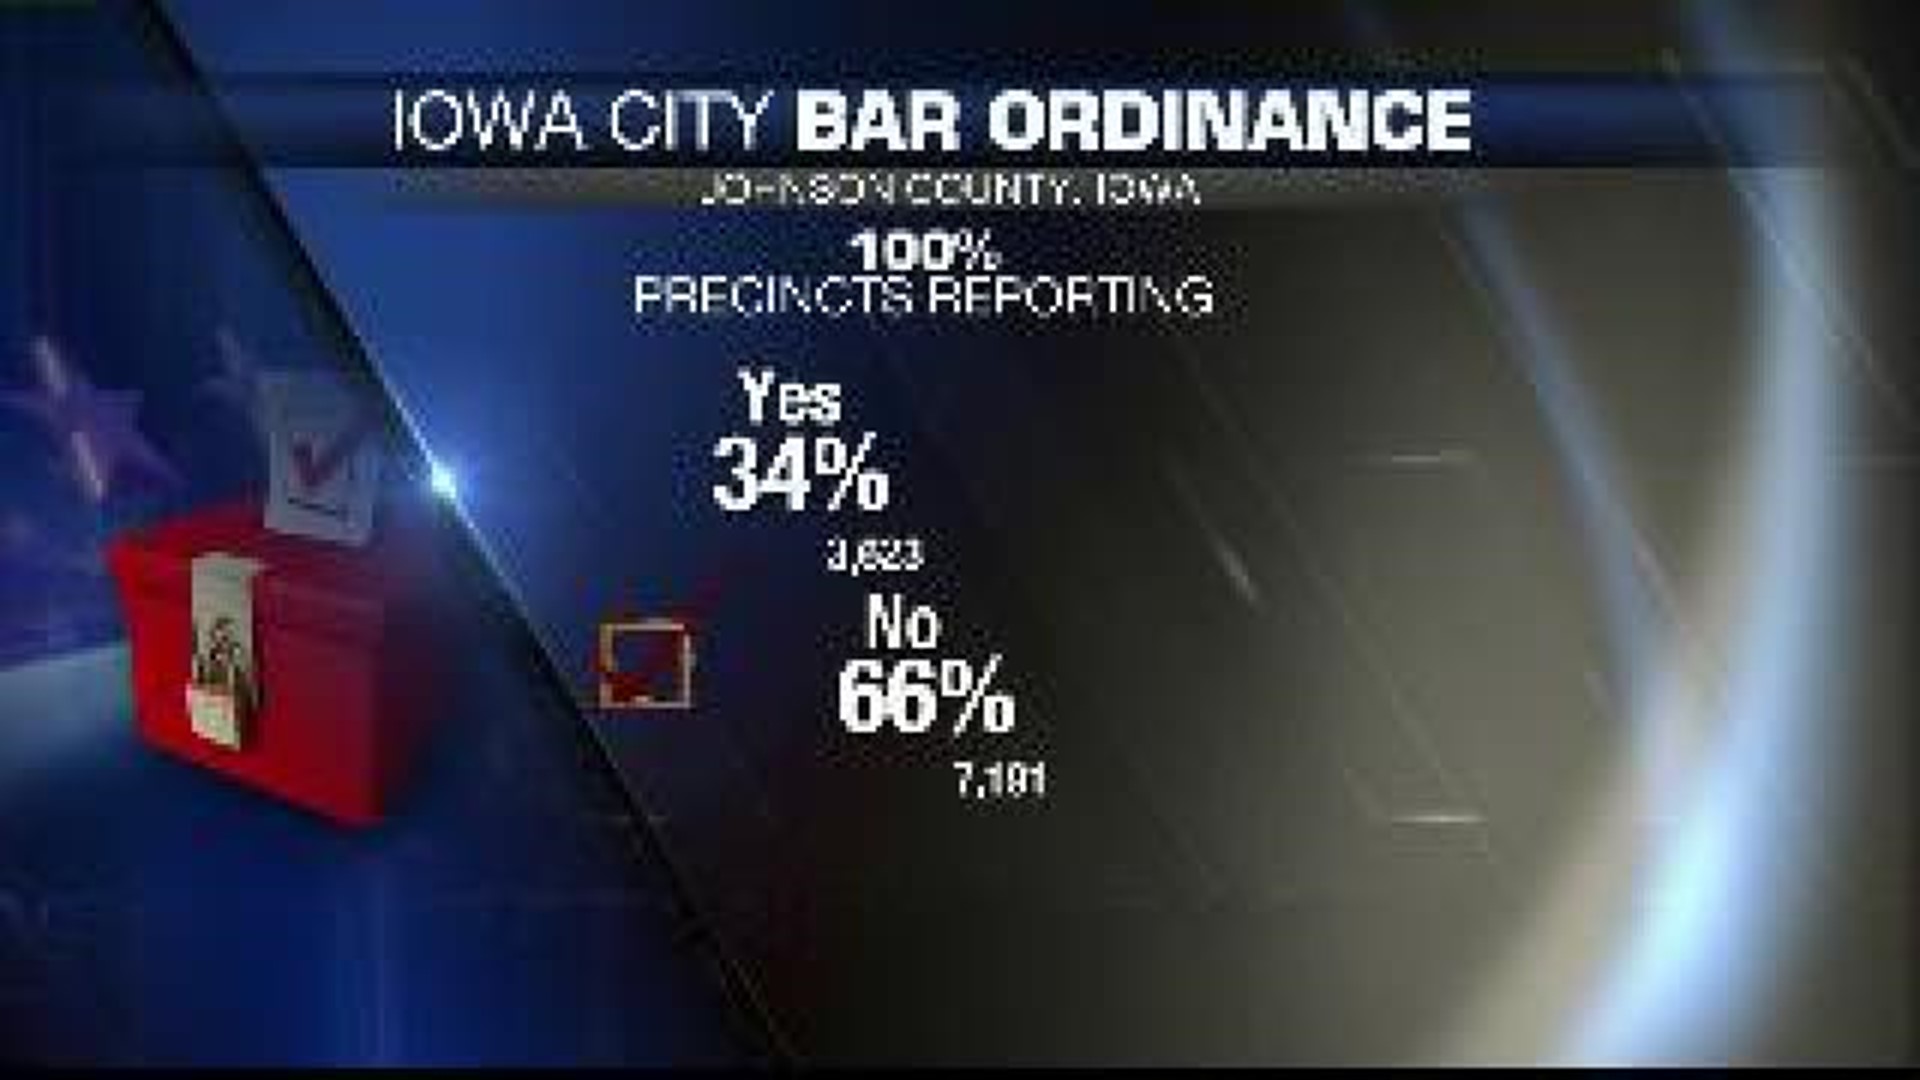 Iowa City bar ordinance upheld